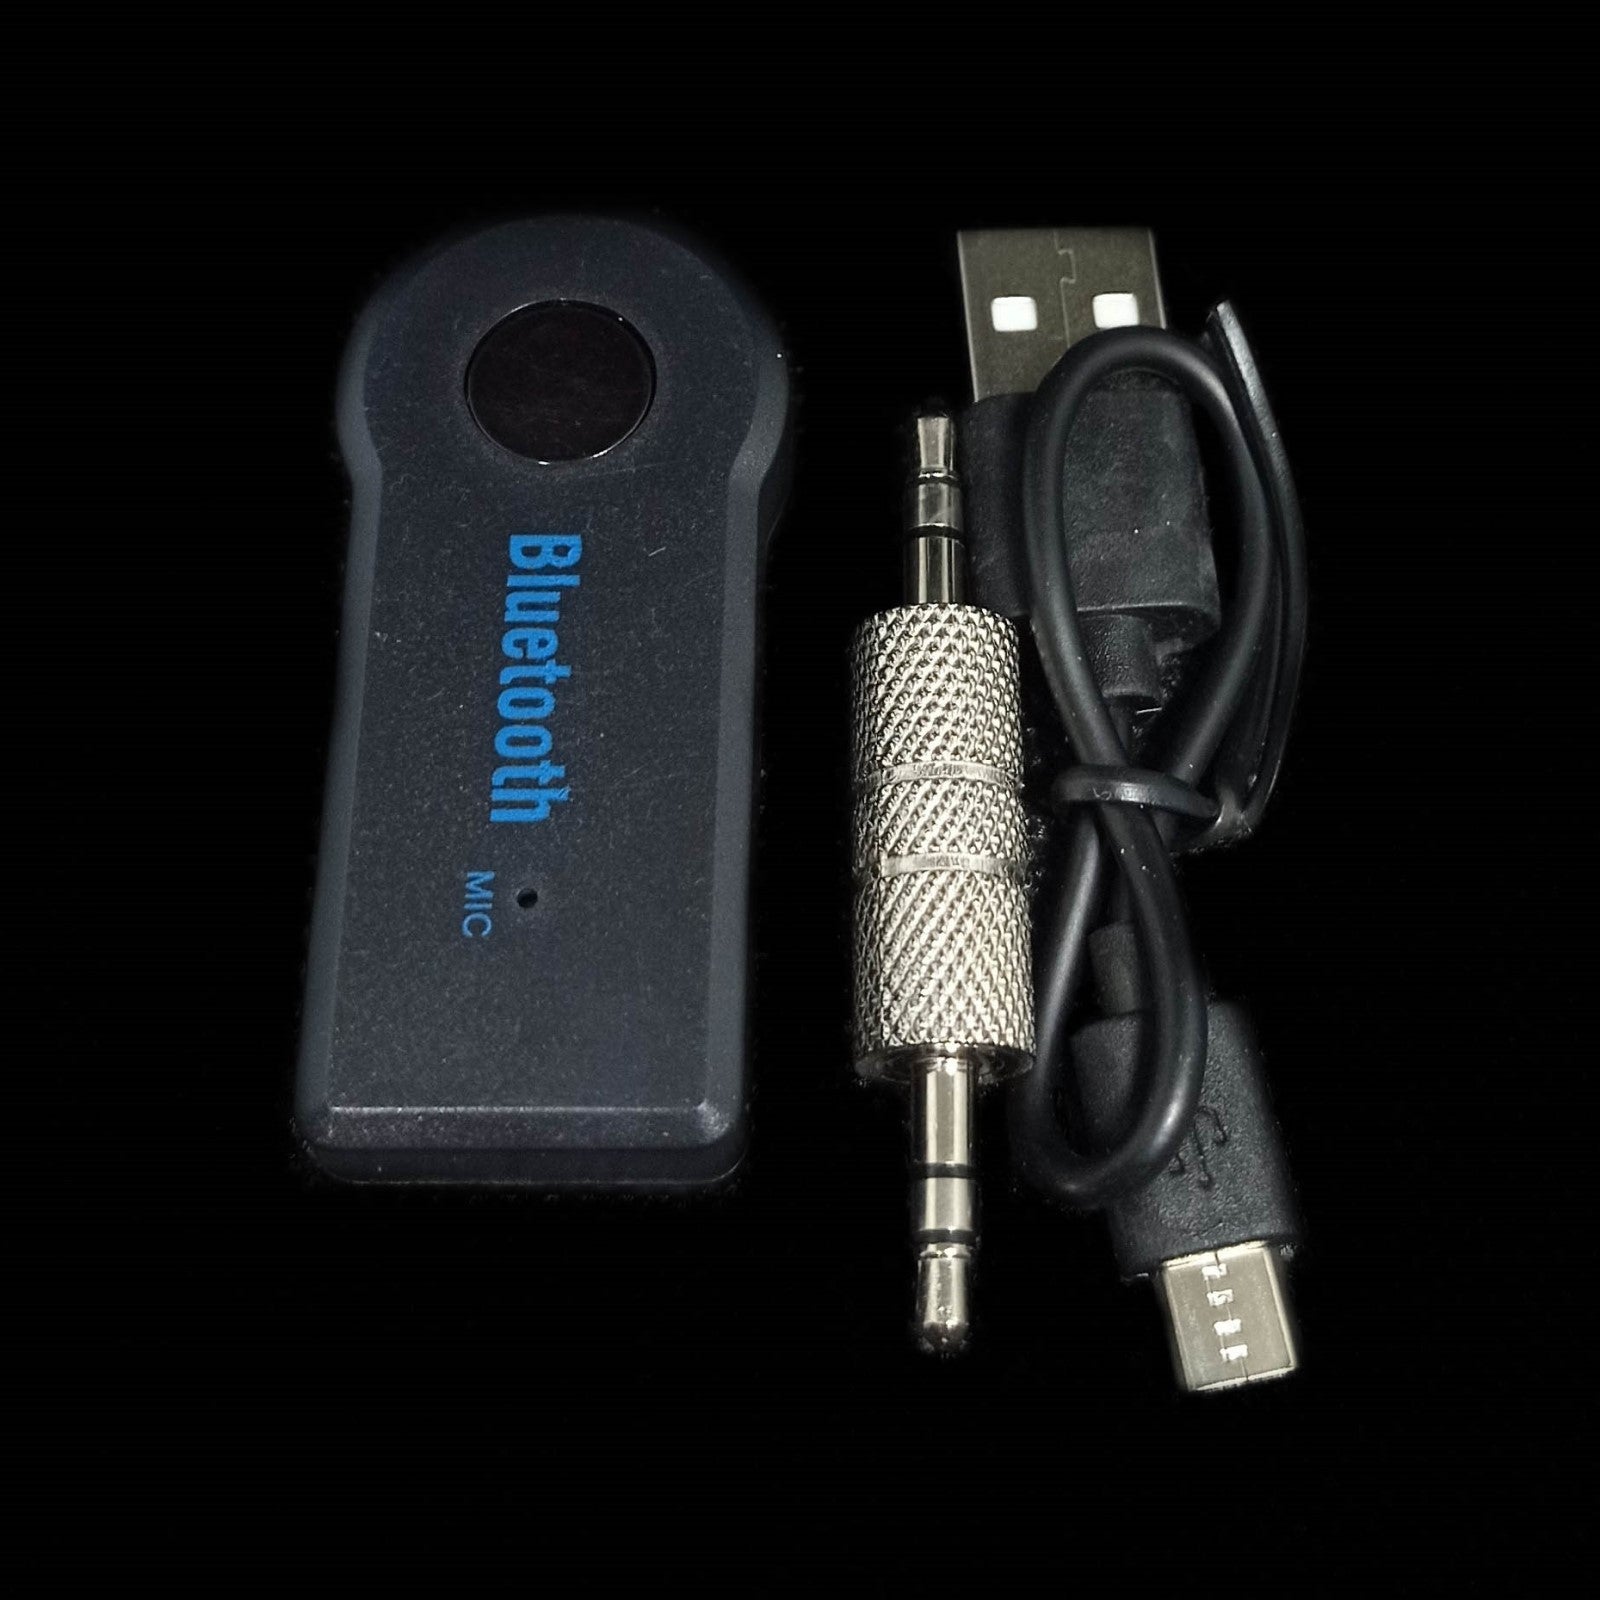 transmissor Bluetooth aux de perto, com os seus cabos de ligação para ligar ao automóvel